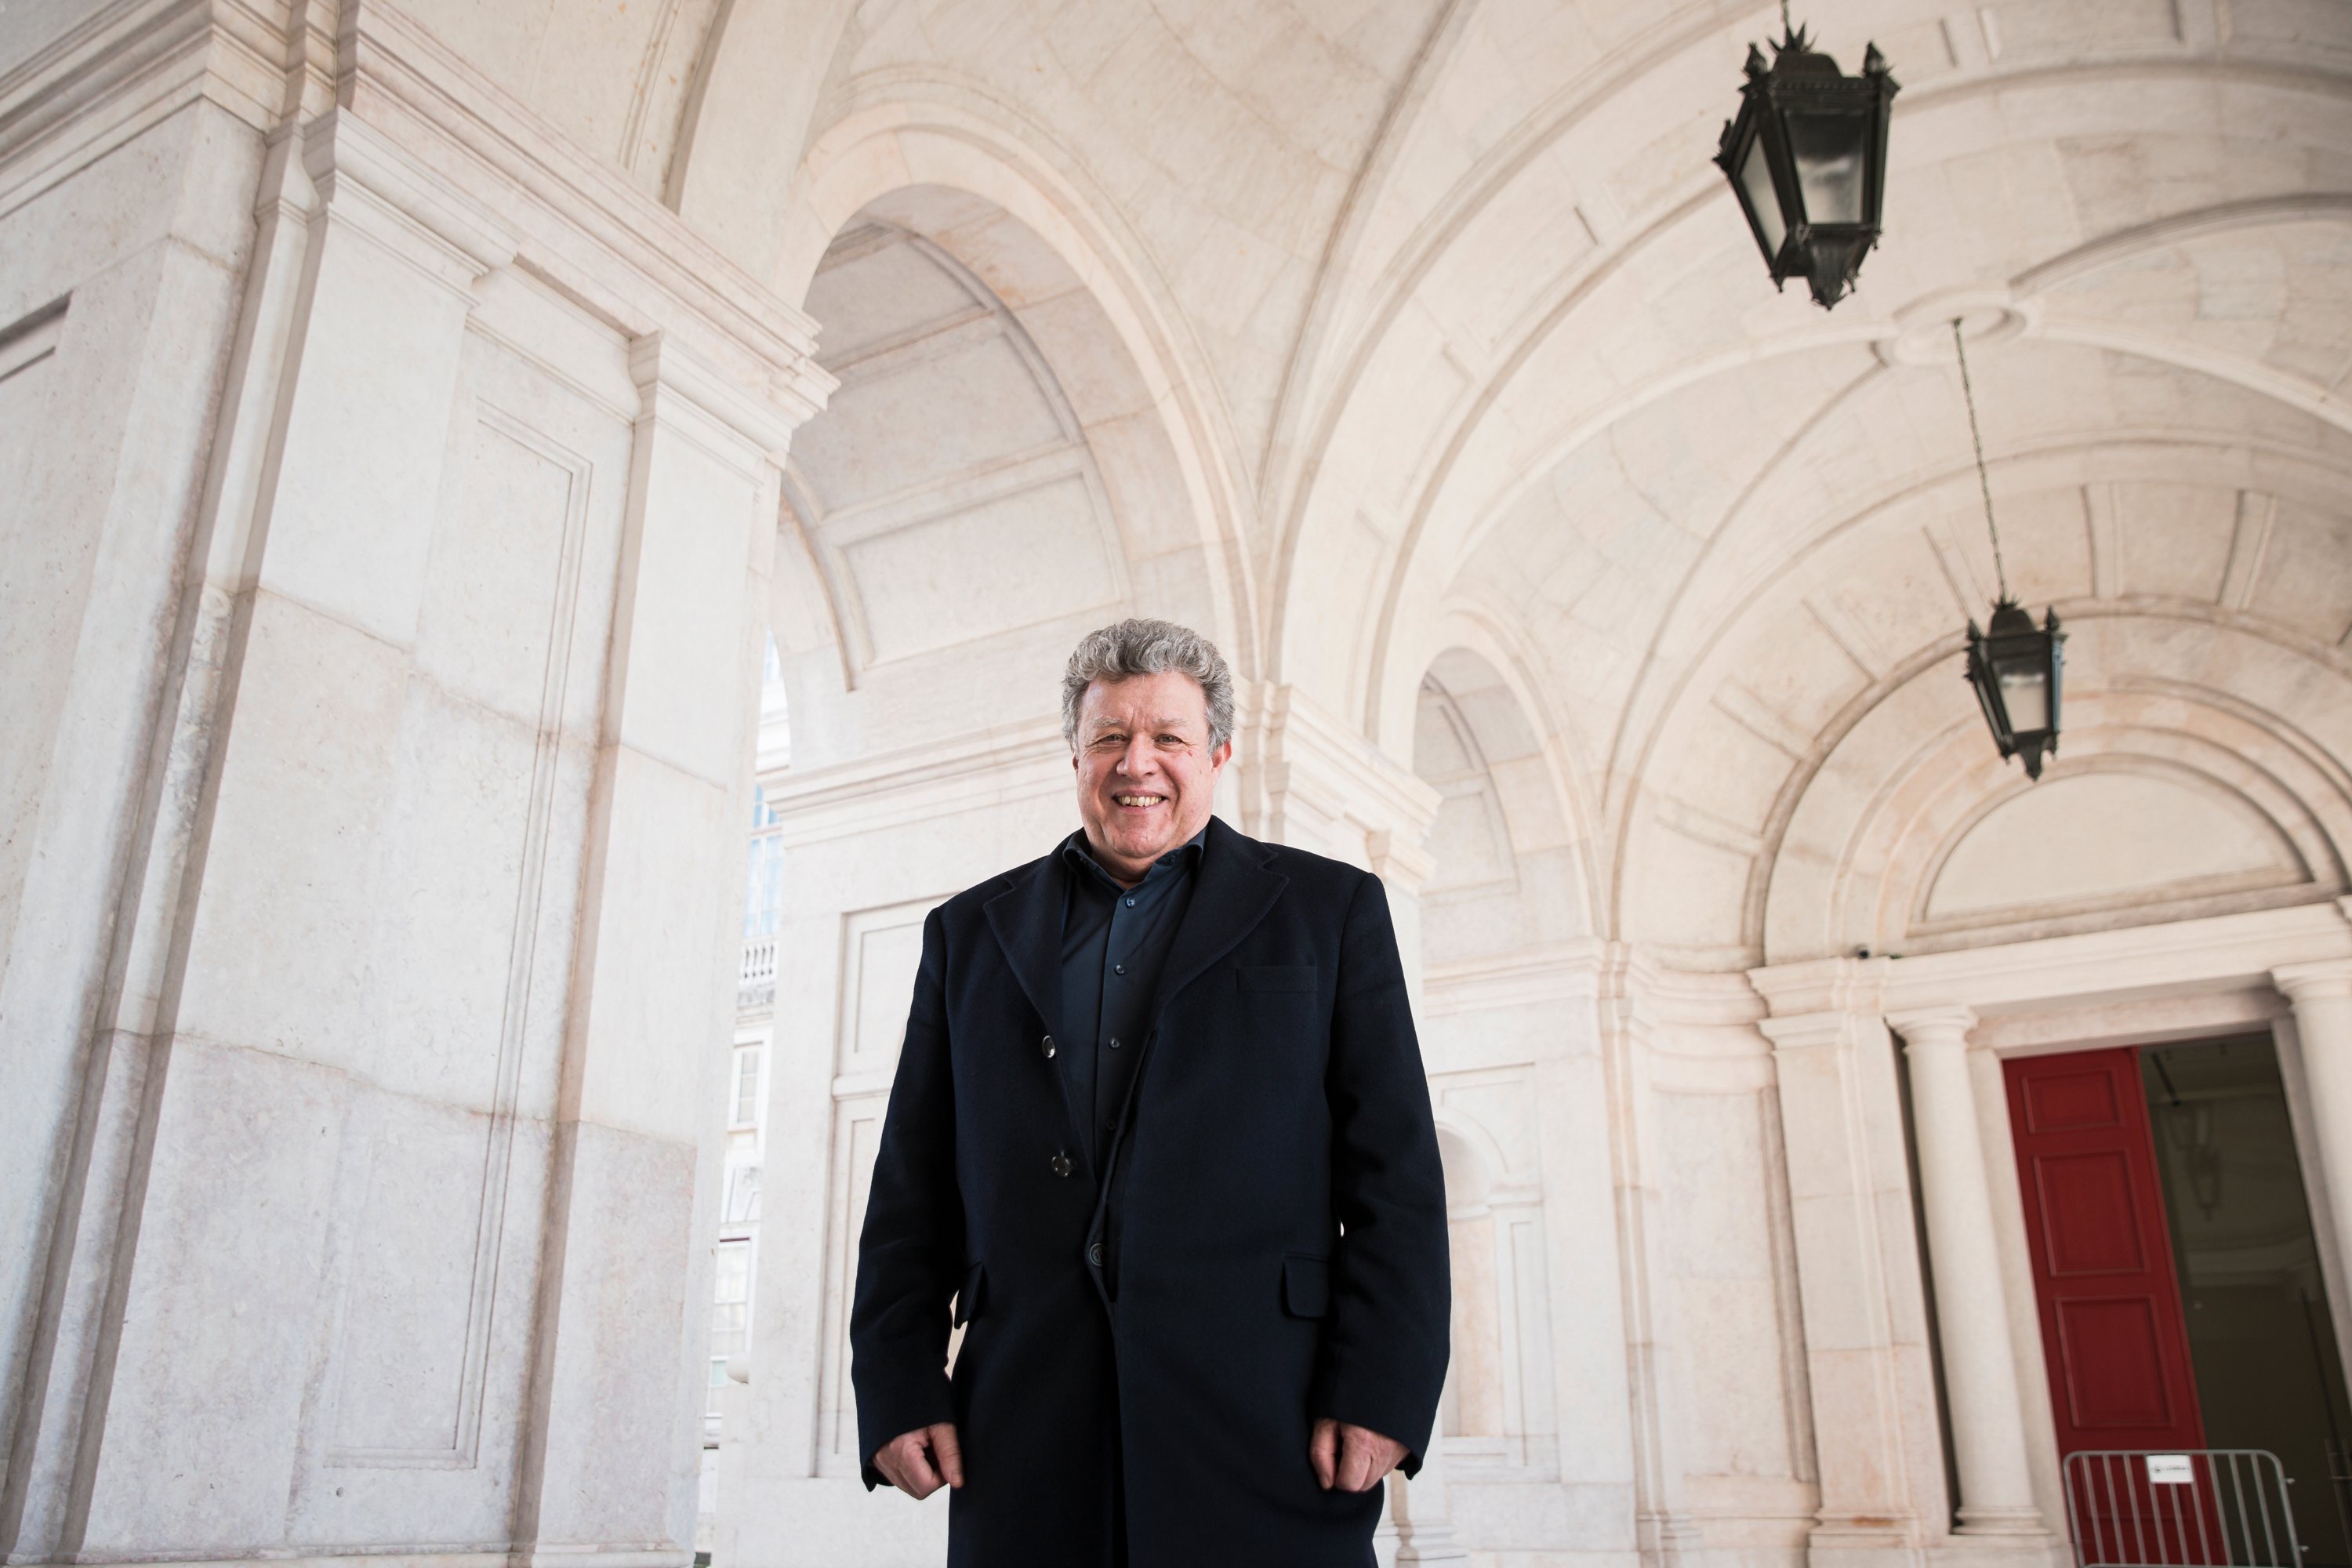 João Carlos dos Santos, director geral do património fotografado no Palácio da Ajuda. Lisboa, 16 de Dezembro de 2021. FILIPE AMORIM/OBSERVADOR